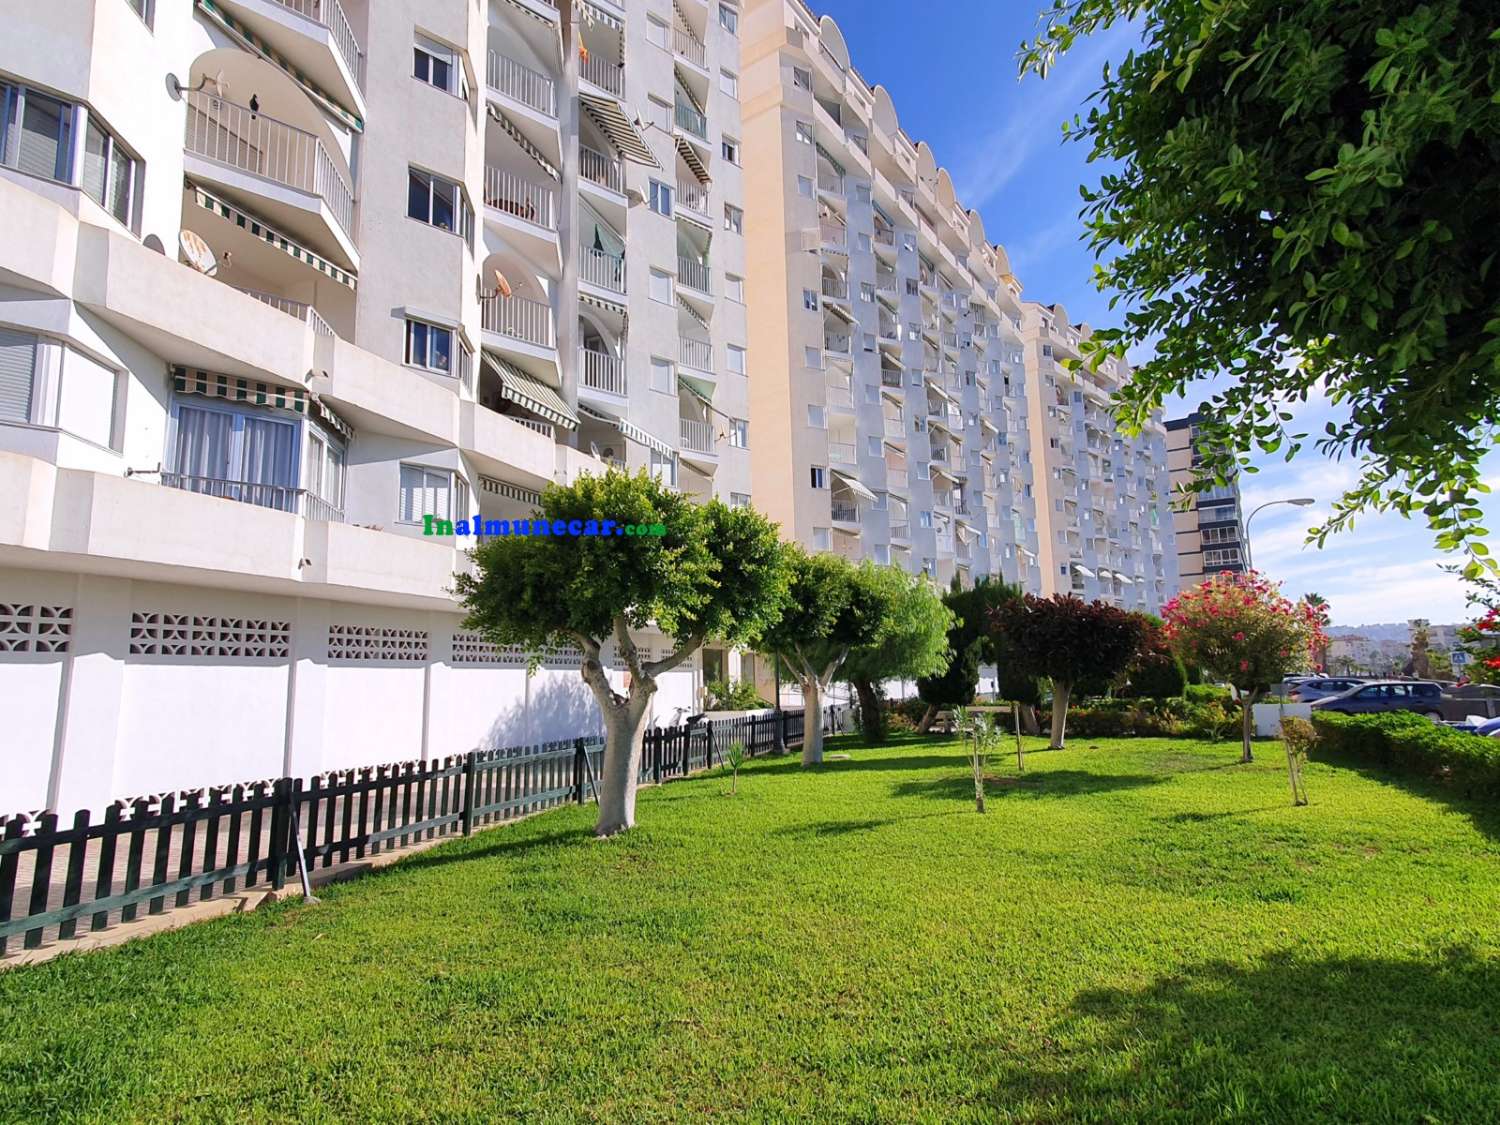 Appartement avec place de parking à vendre en bord de mer, Paseo de Cotobro, Almuñécar, Costa Tropical.